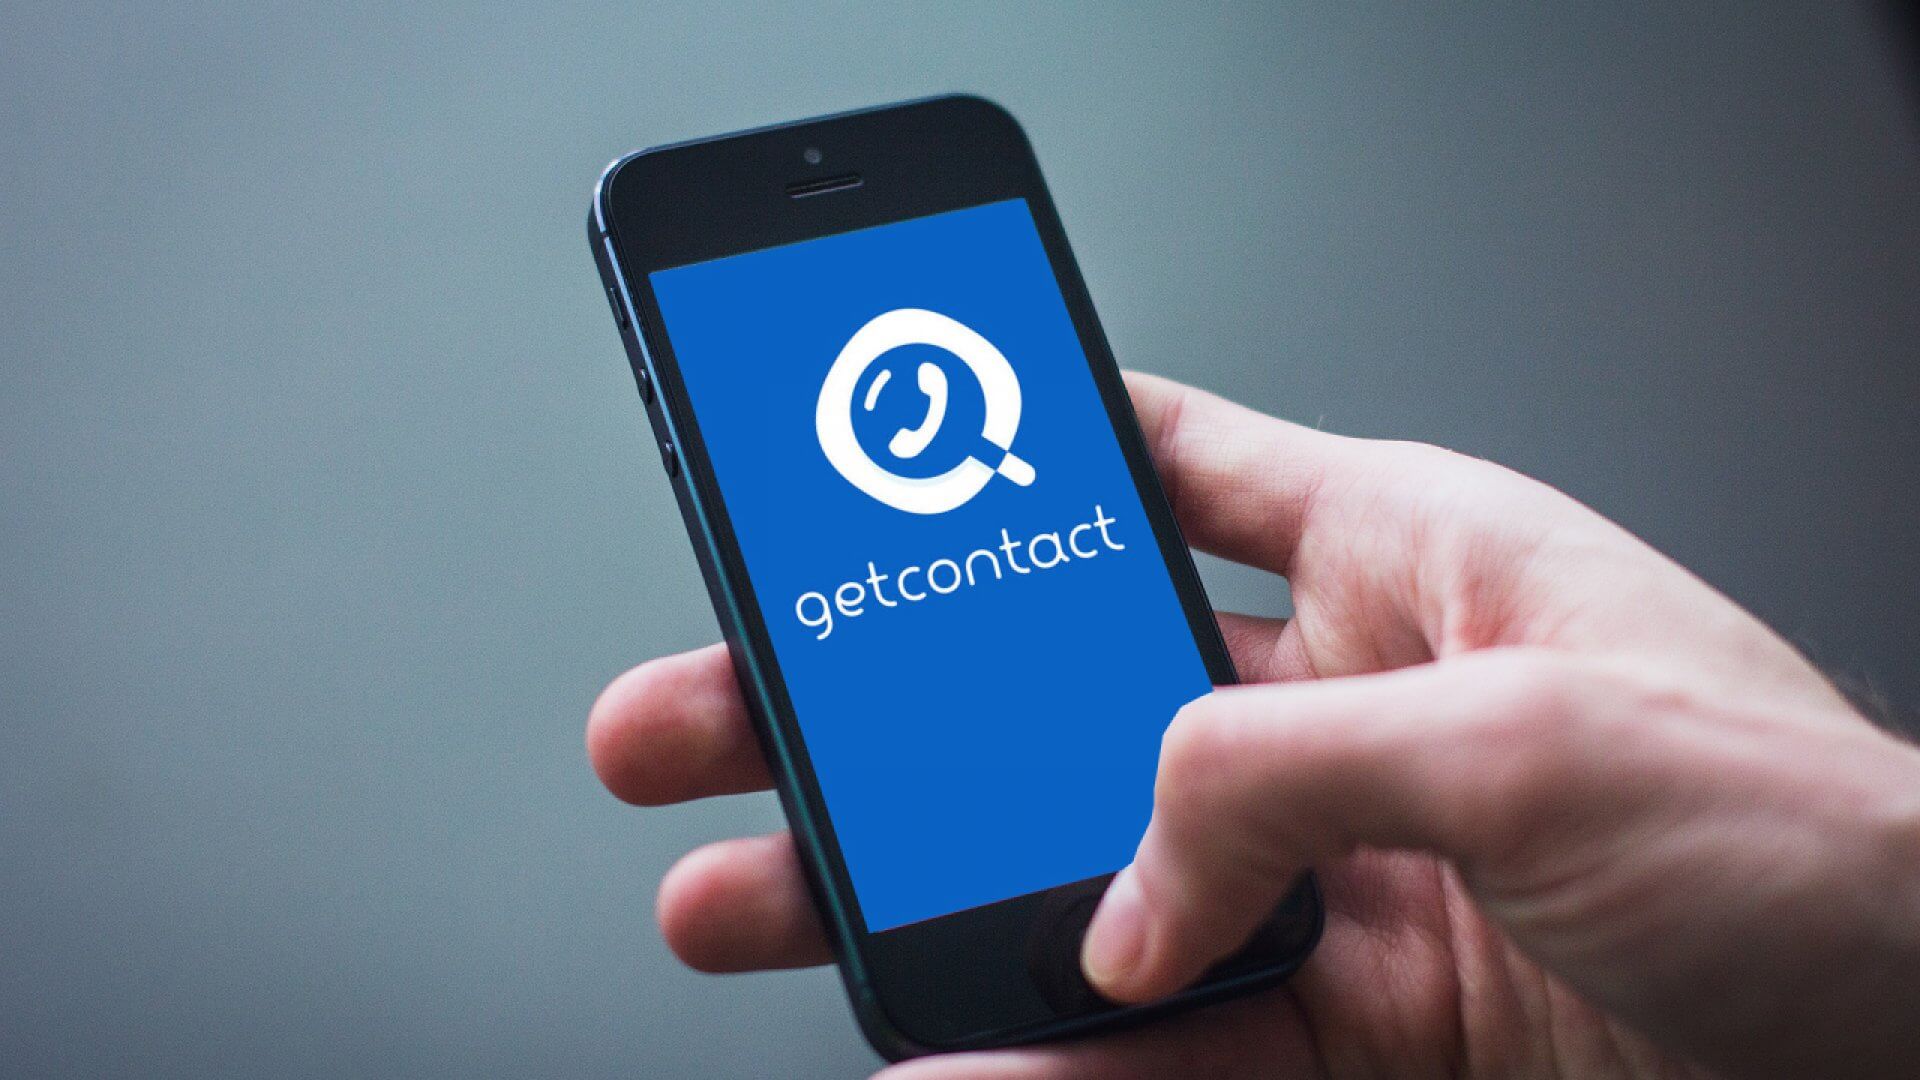 Https getcontact com en. Гет контакт. GETCONTACT приложение. Гетконтакт картинки. Что такое Теги в гет контакт.